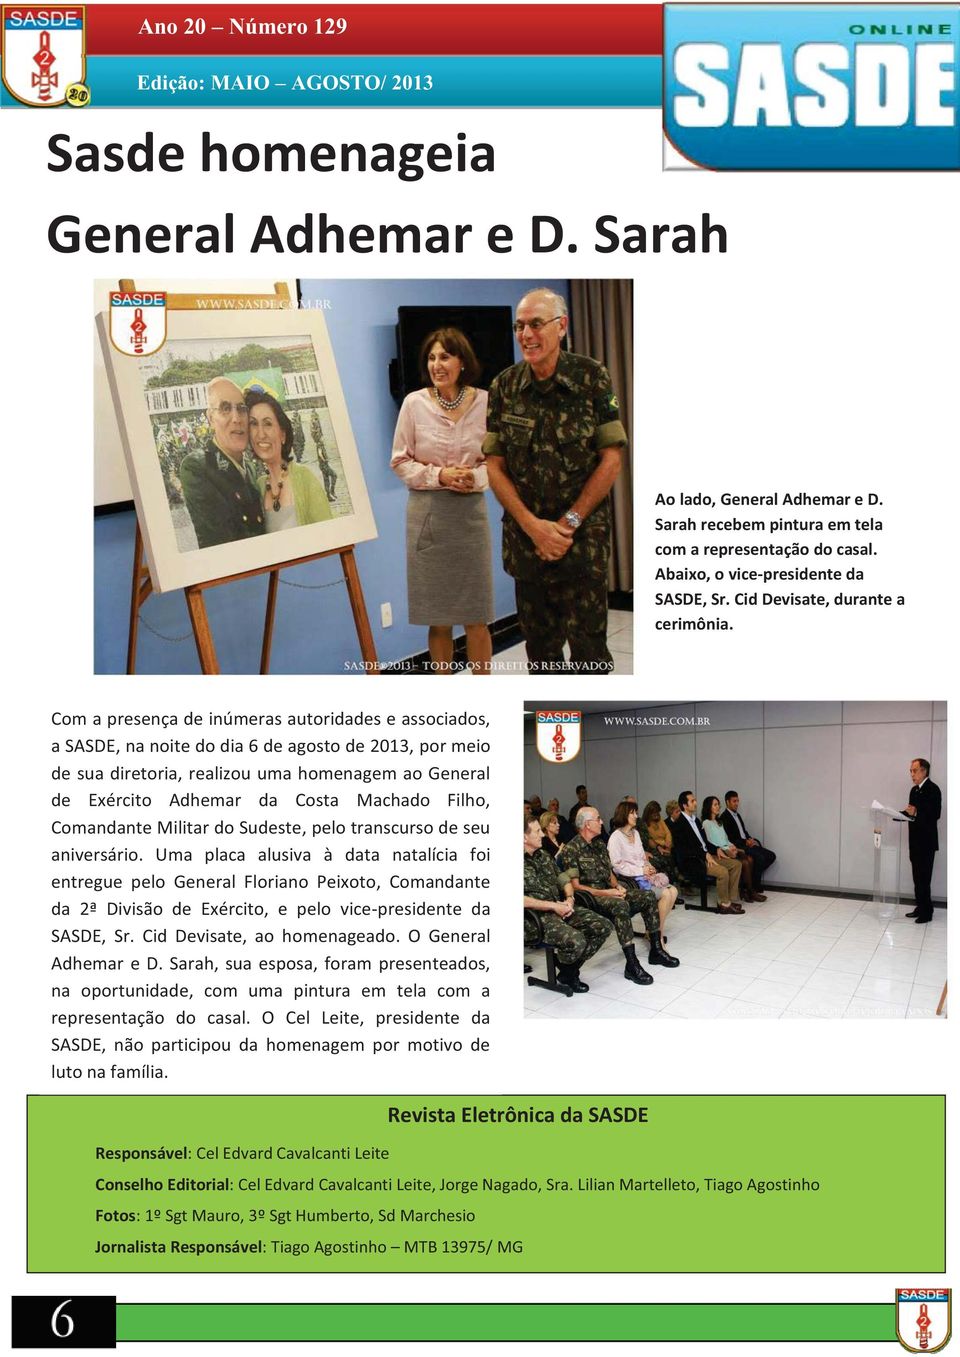 Com a presença de inúmeras autoridades e associados, a SASDE, na noite do dia 6 de agosto de 2013, por meio de sua diretoria, realizou uma homenagem ao General de Exército Adhemar da Costa Machado